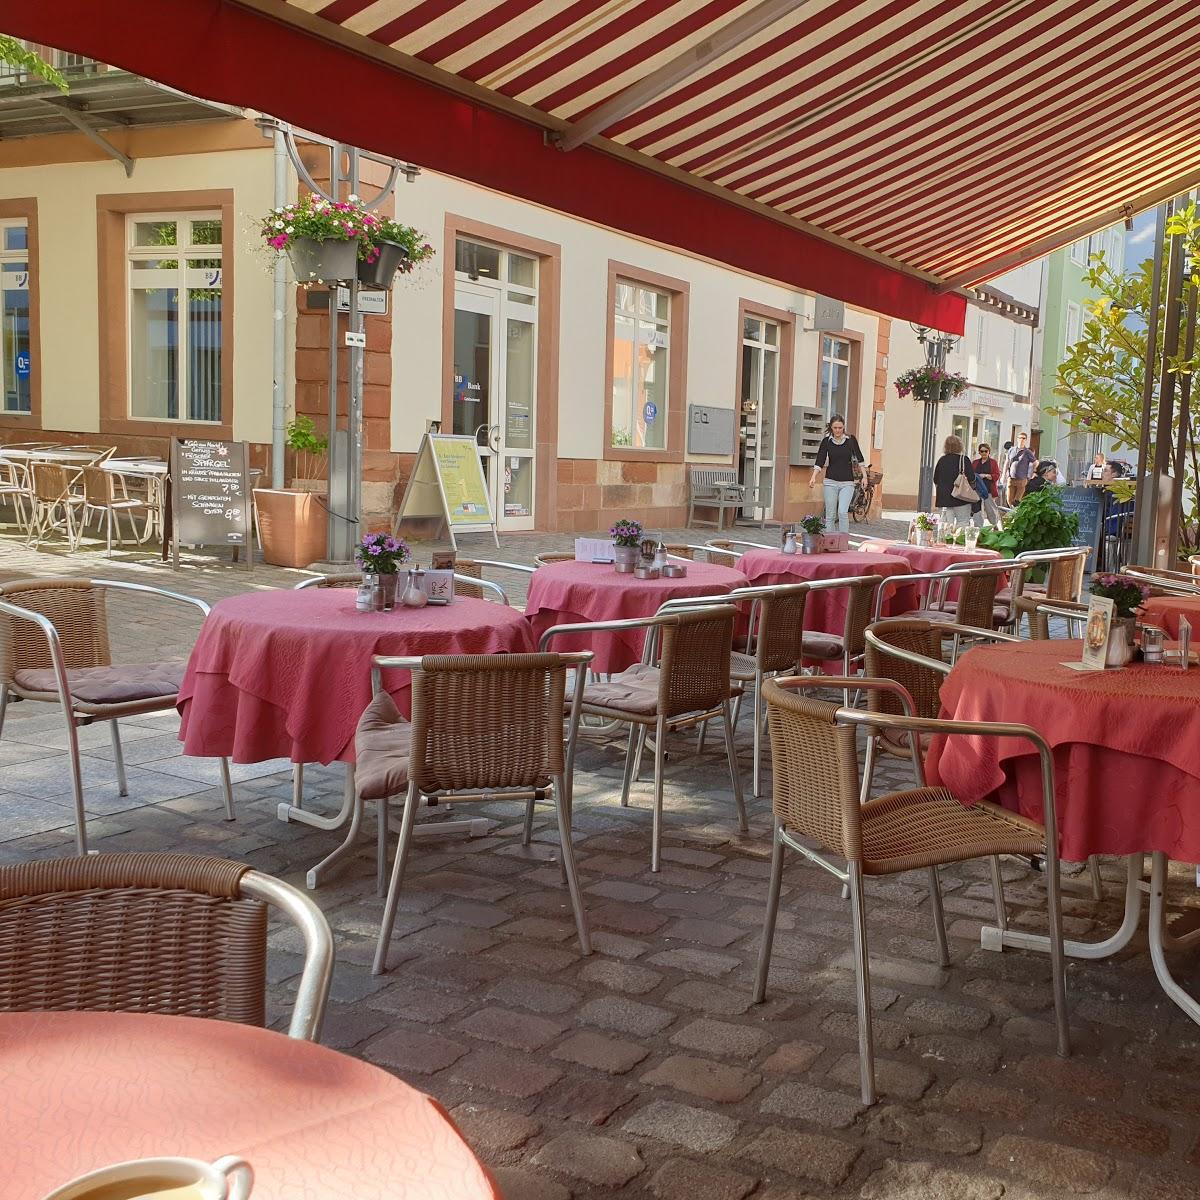 Restaurant "Café am Markt" in Landau in der Pfalz